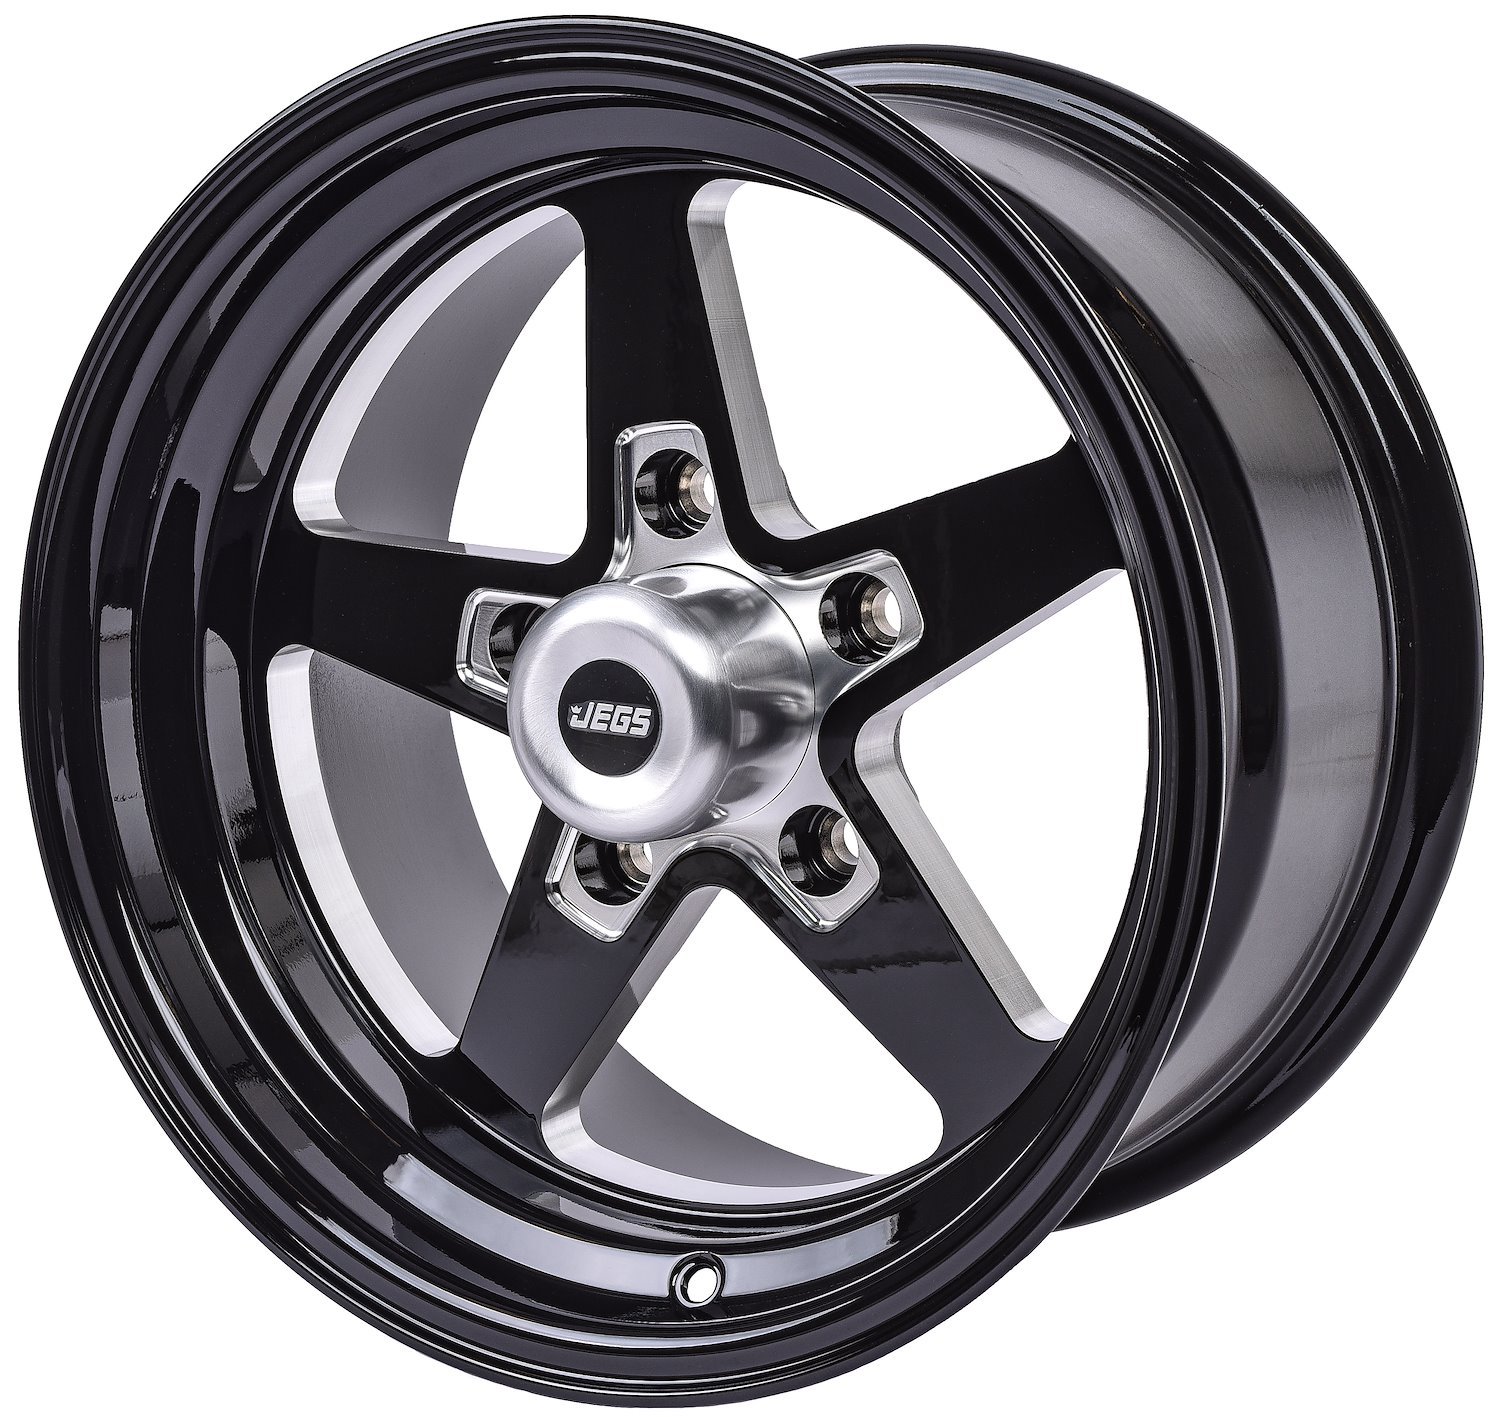 SSR Star Wheel [Size: 15" x 8"] Gloss Black